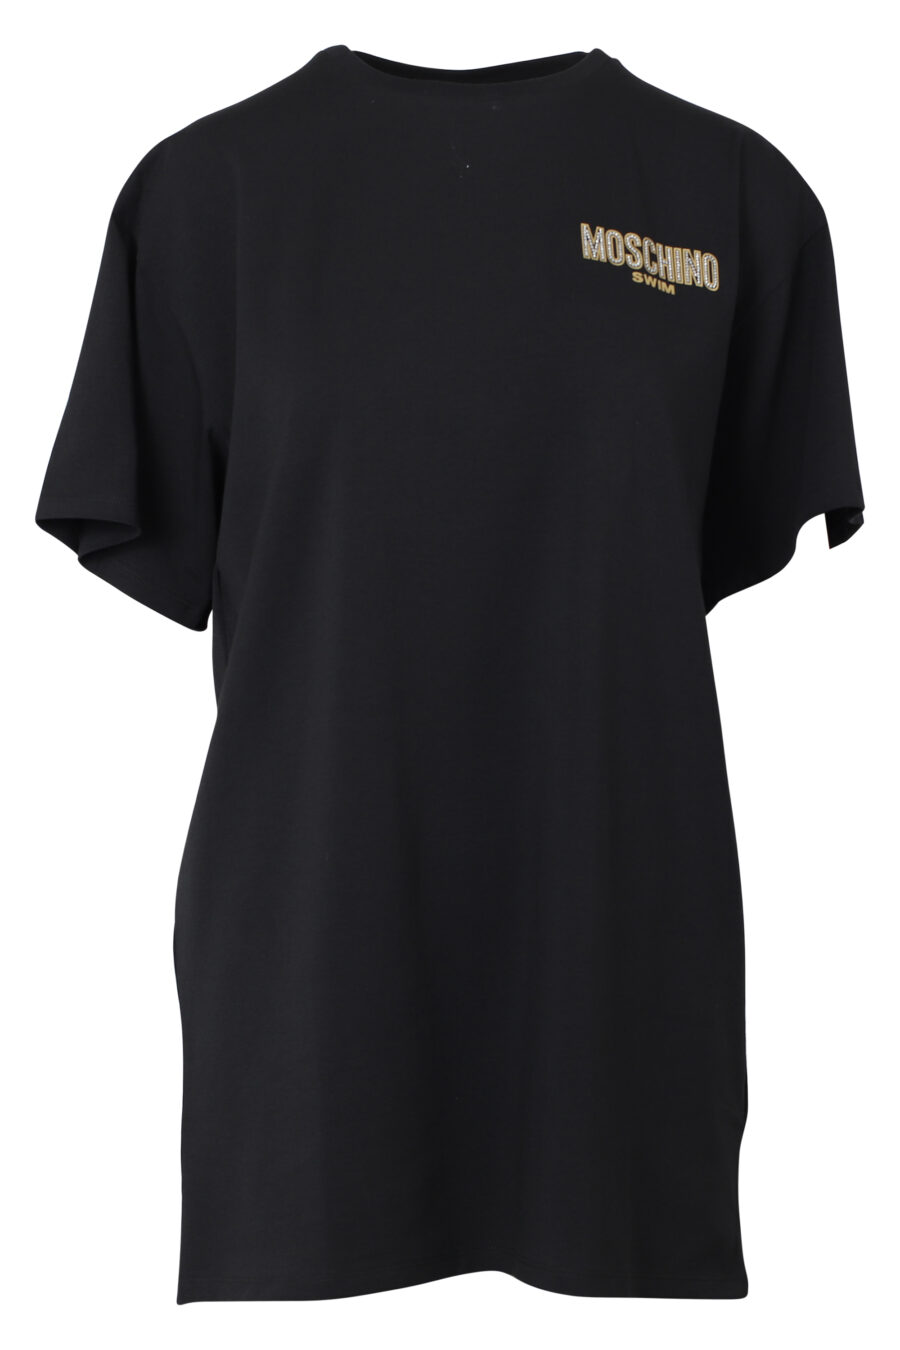 Camiseta maxi negra con minilogo dorado en strass - IMG 9811